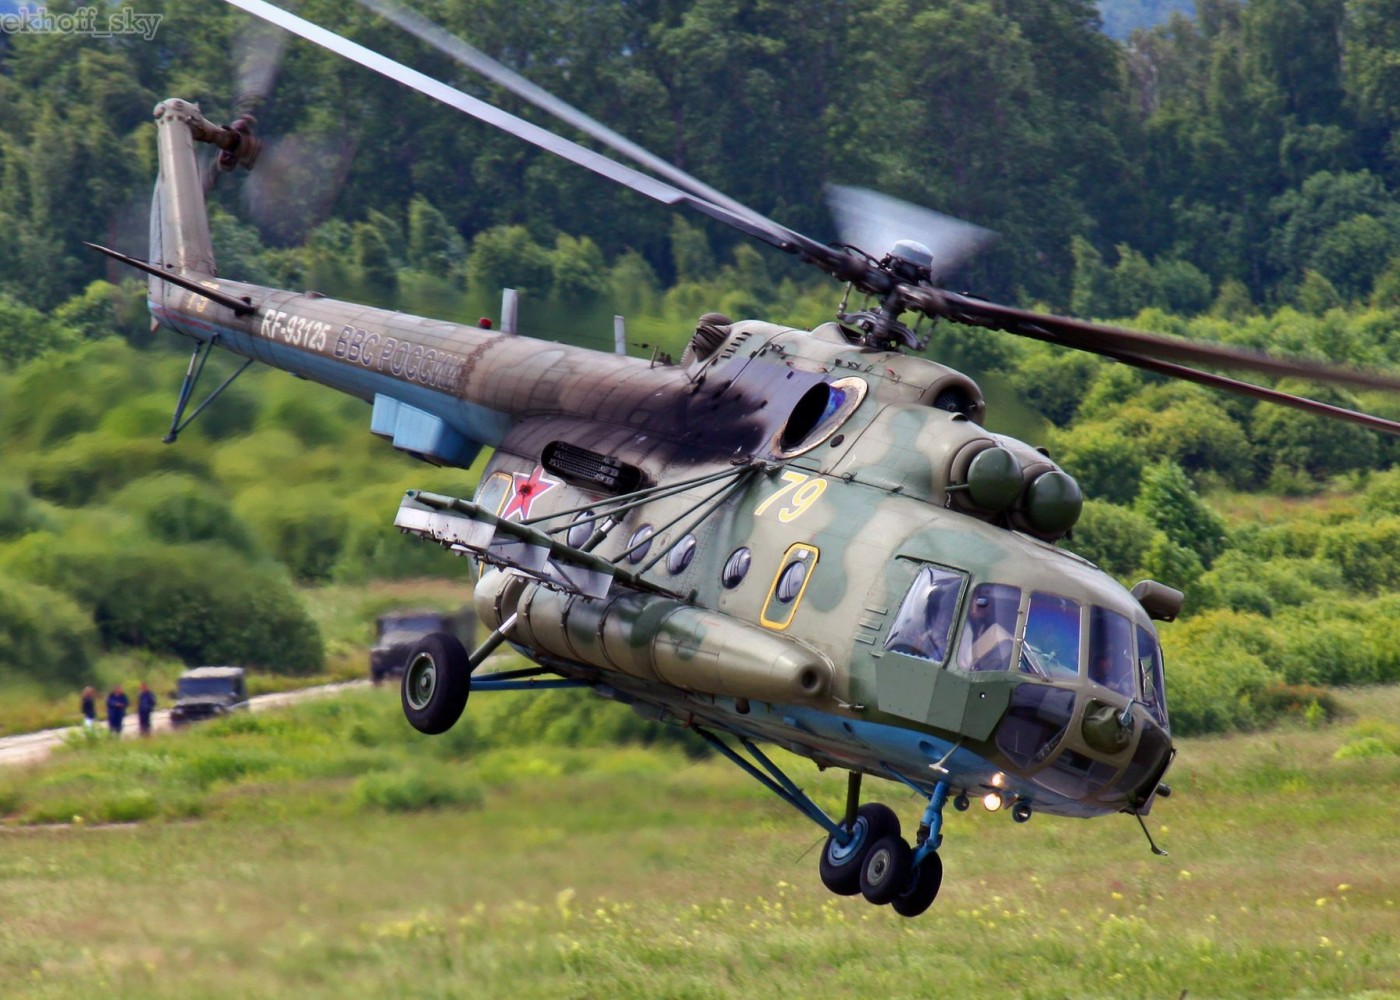 Ukrayna Rusiyanın helikopterini VURDU